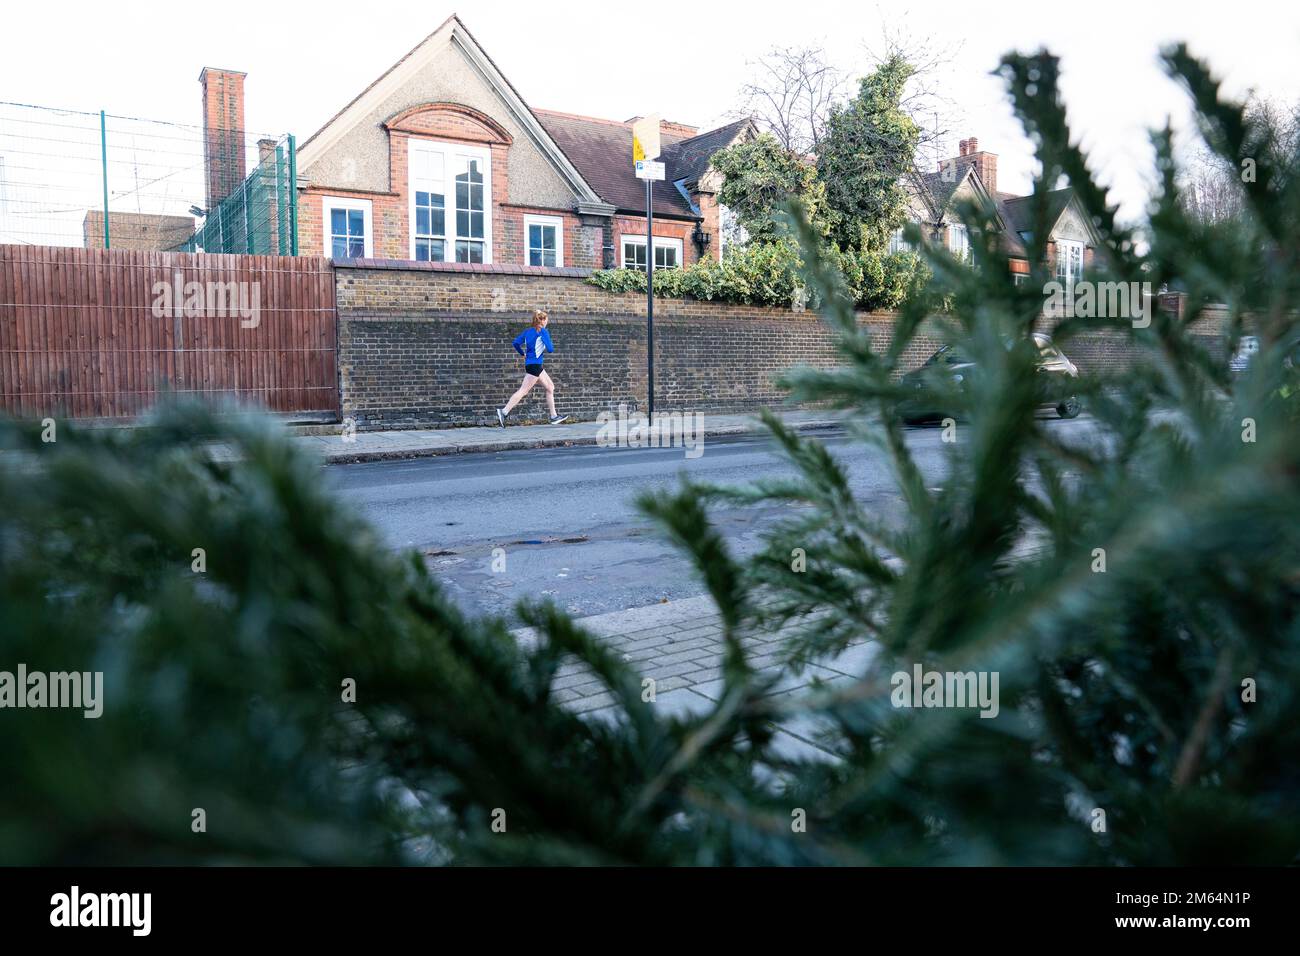 Una persona si aggirava davanti a un albero di Natale scartato sul marciapiede a Balham, nel sud di Londra. Data immagine: Lunedì 2 gennaio 2023. Foto Stock